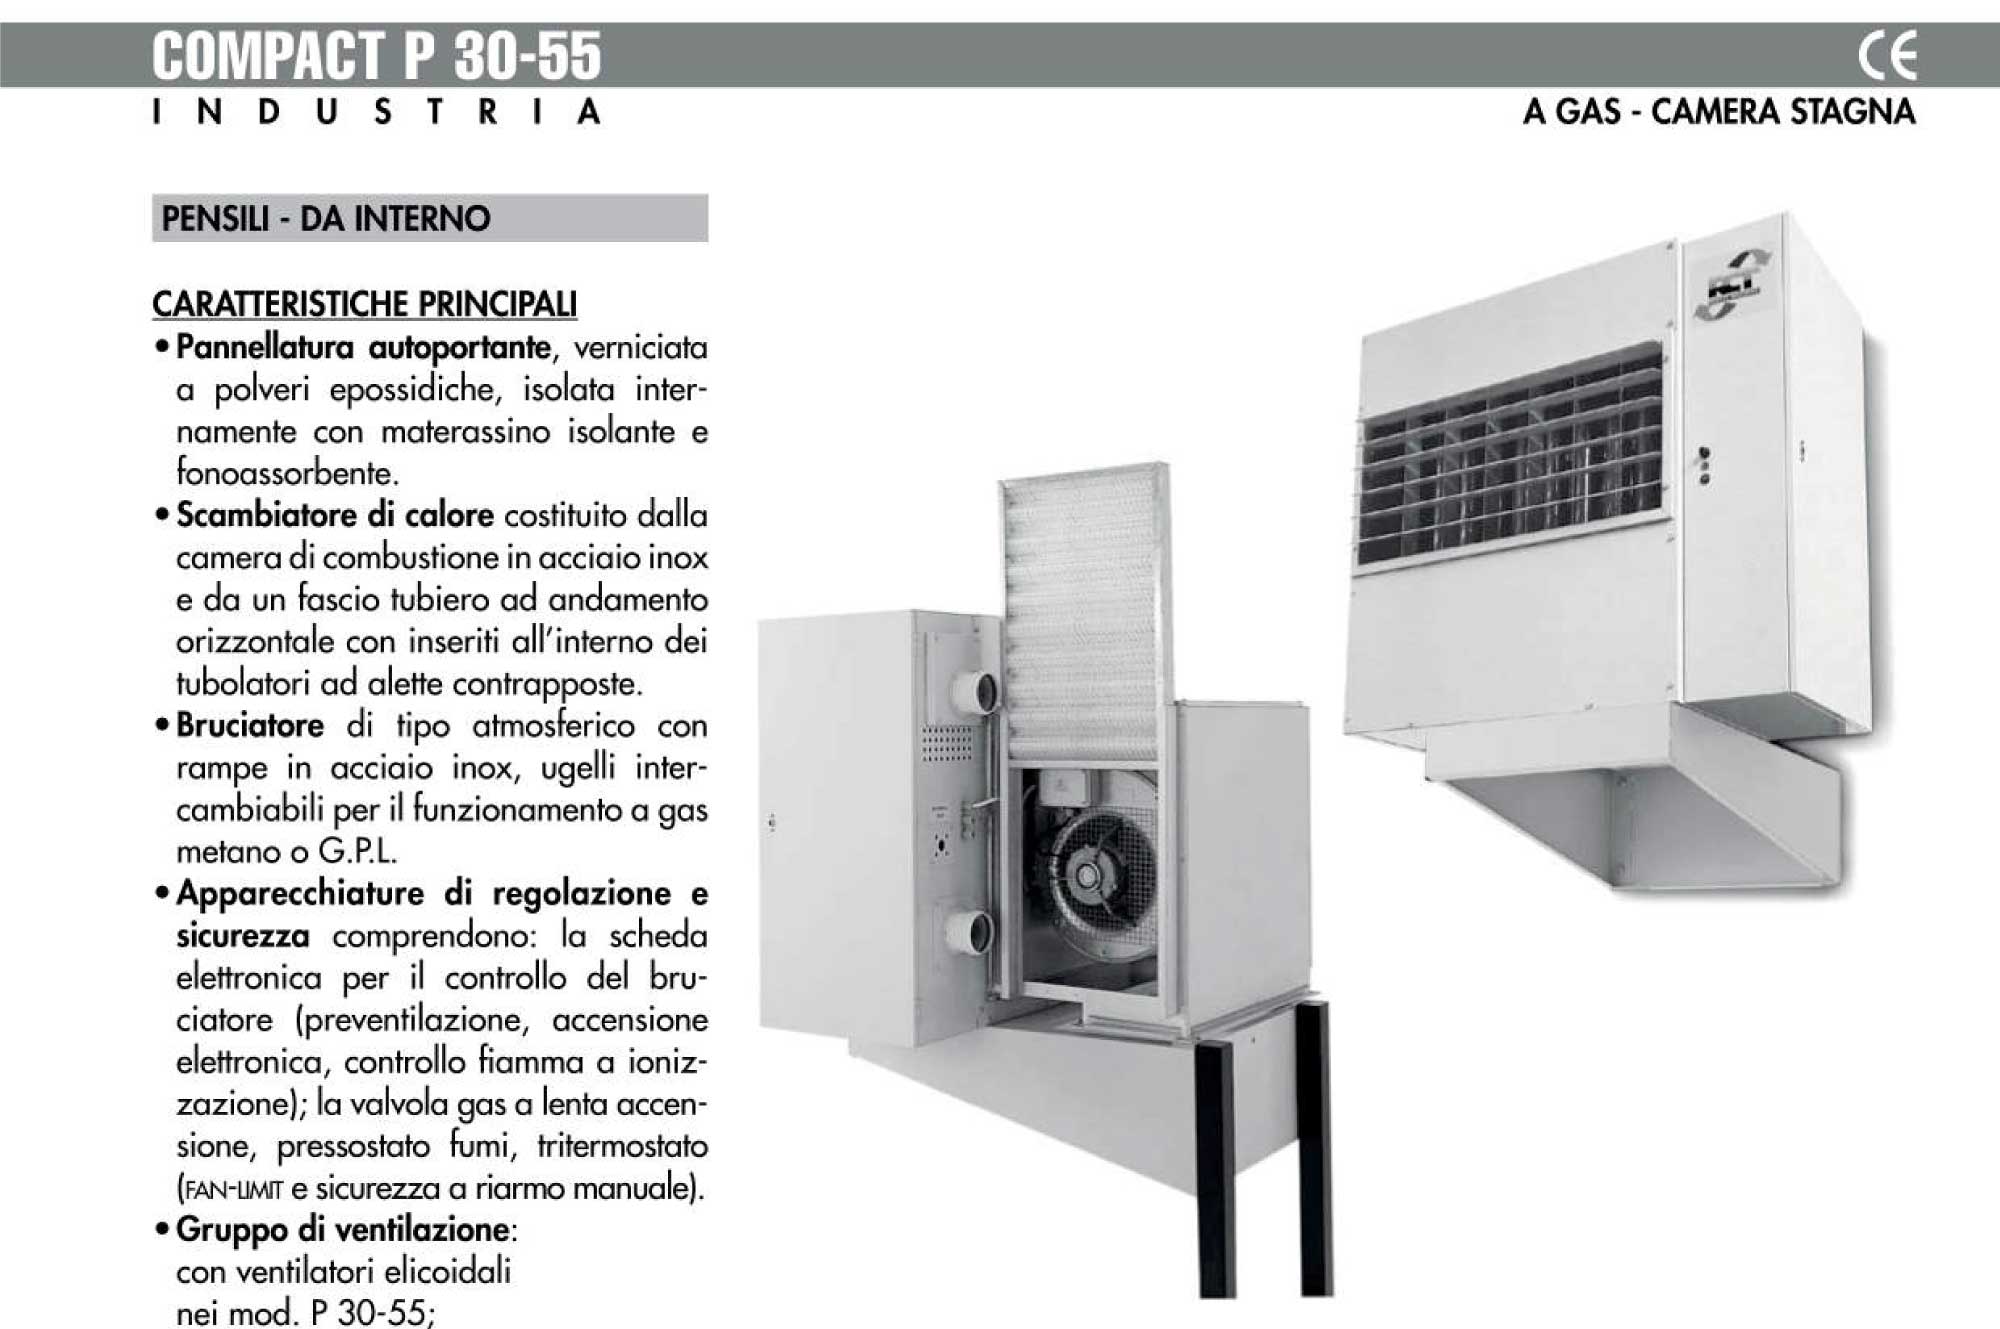 Generatori-aria-calda-per-Industria_COMPACT_P-30-55